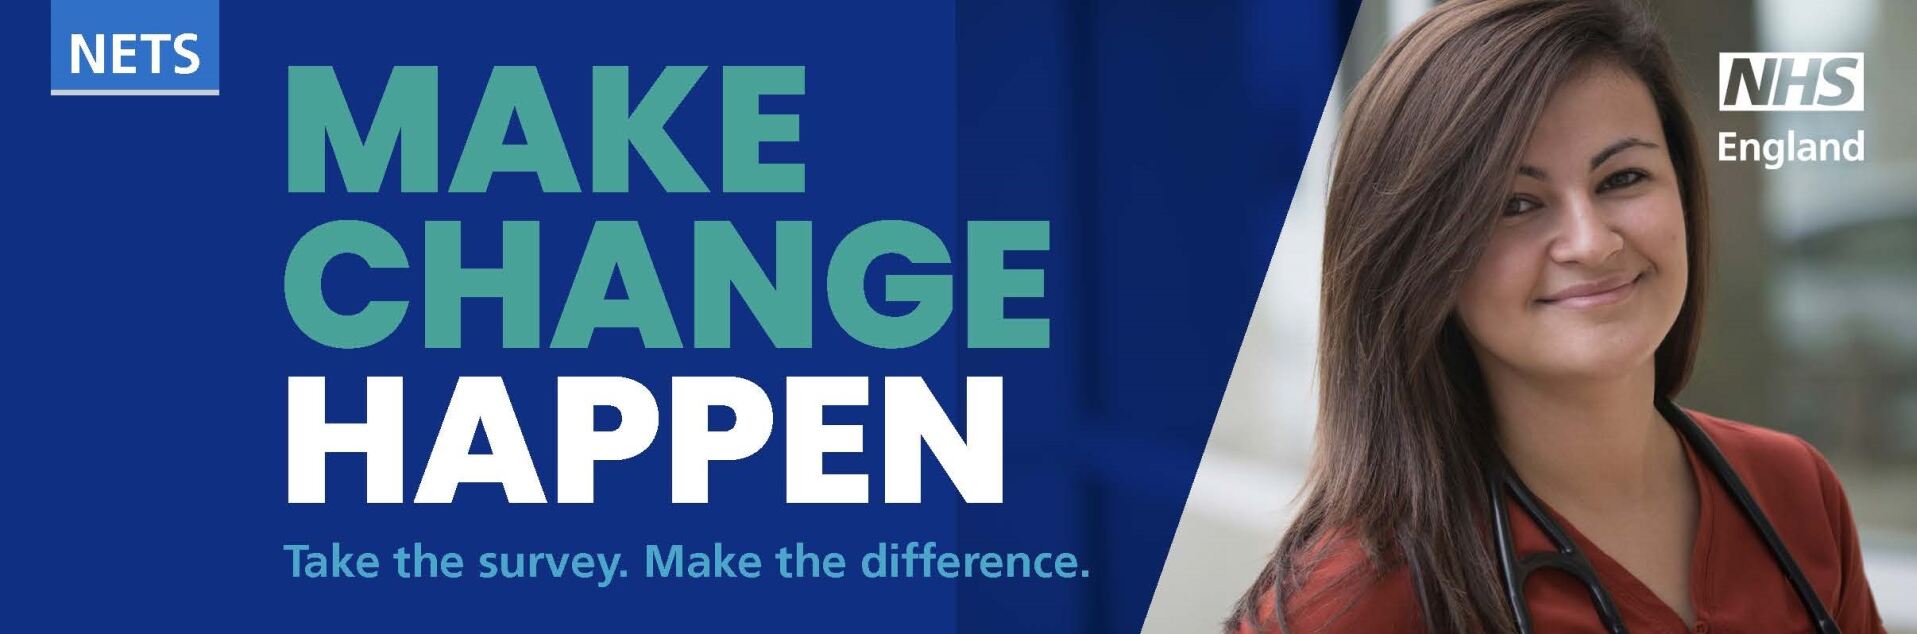 Make change happen banner